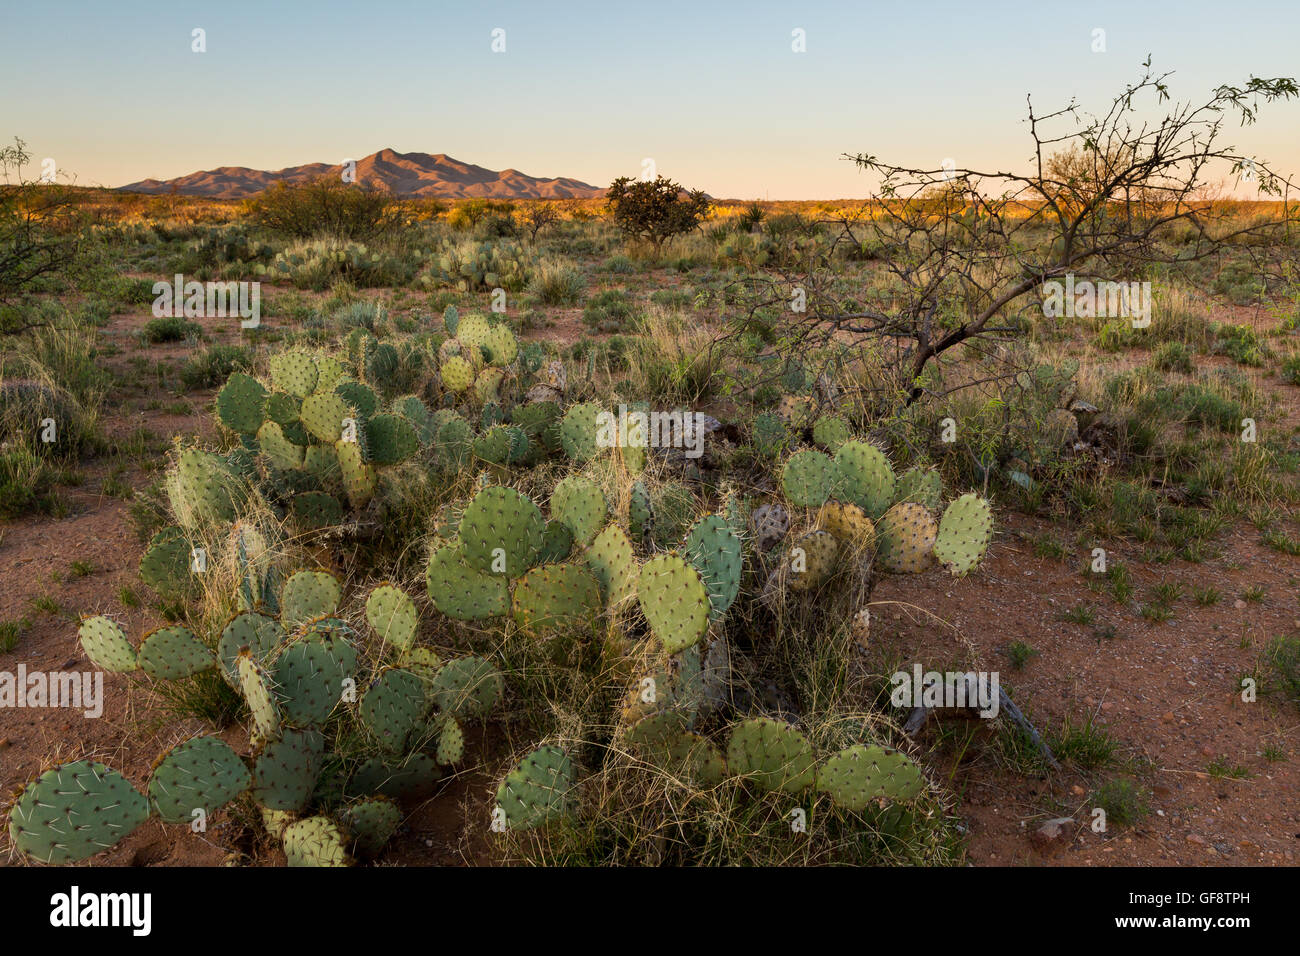 La première lumière du jour, frappant le sol du désert de Sonoran. Las Cienegas National Conservation Area, Arizona Banque D'Images